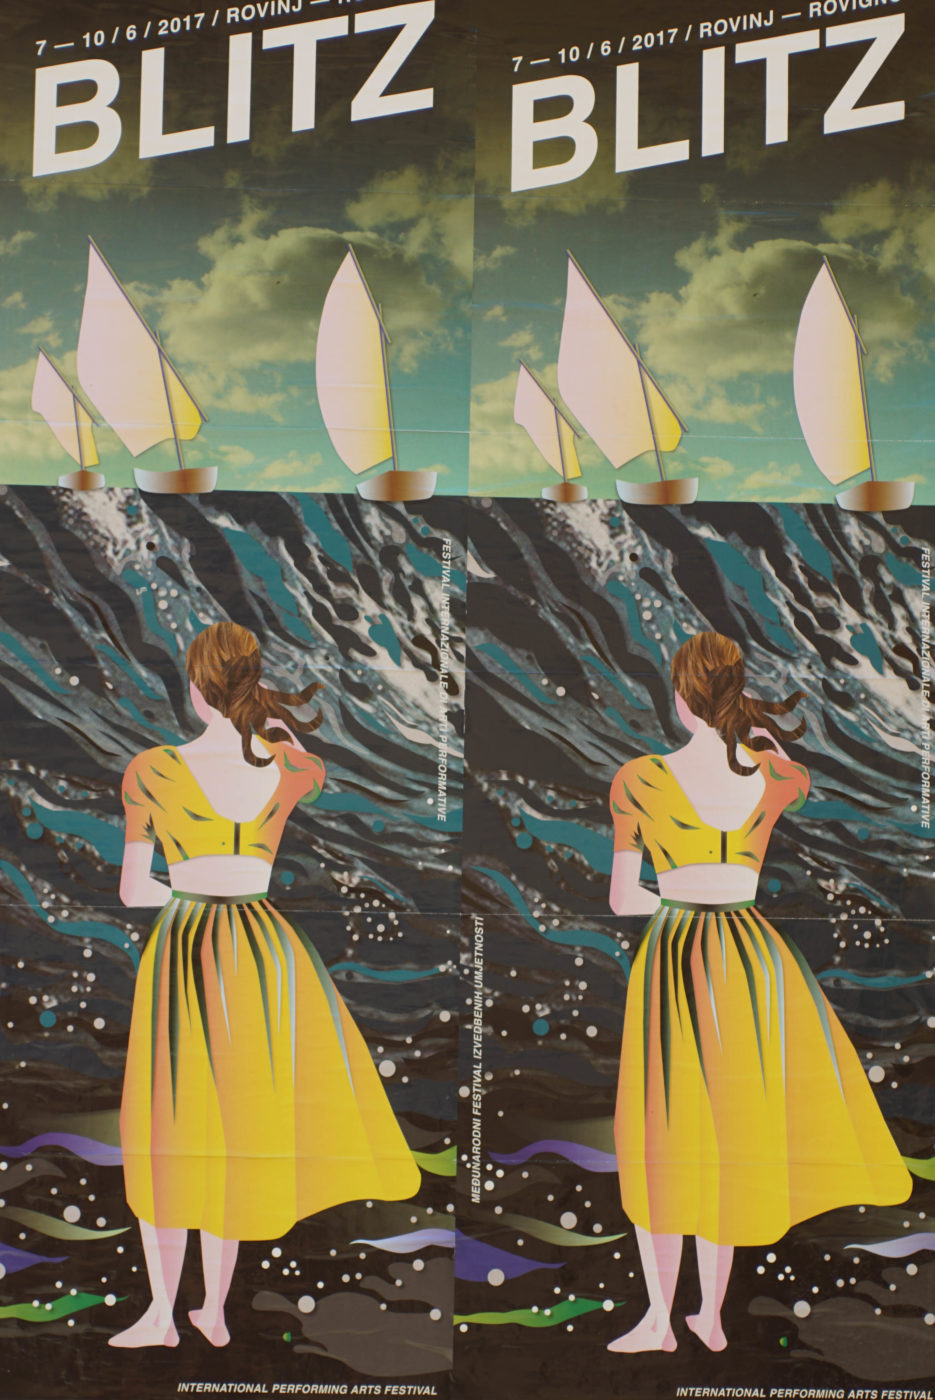 Es ist ein Plakat für ein kunstfestival zusehen. Auf ihm steht ein Frau im gelben Kleid und blickt auf eine Welle. Auf dieser sind drei Segelboote zu sehen.Das ganze Plakat ist durch Designe minimalisiert